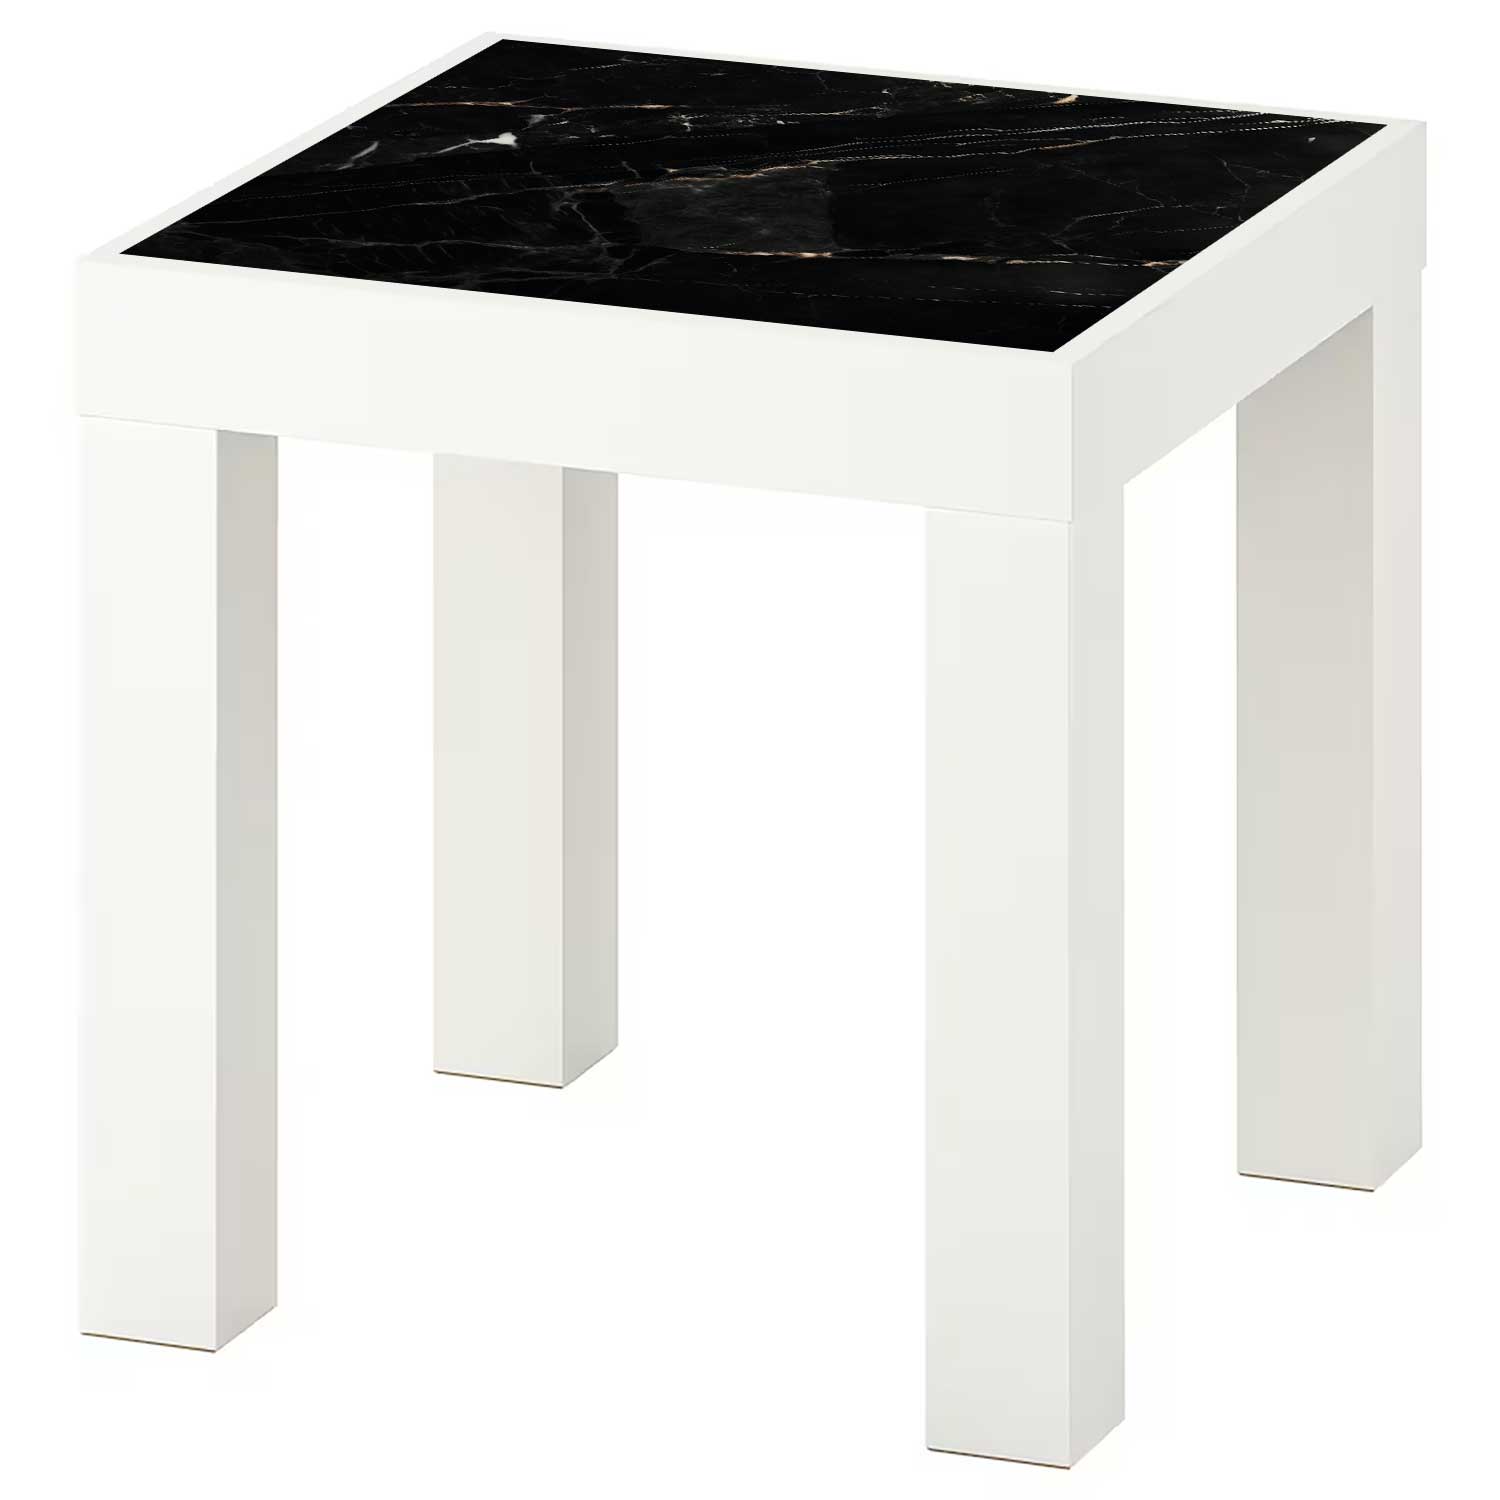 Möbelfolie für IKEA Lack Tisch 35x35 cm 'Marmor Gold'